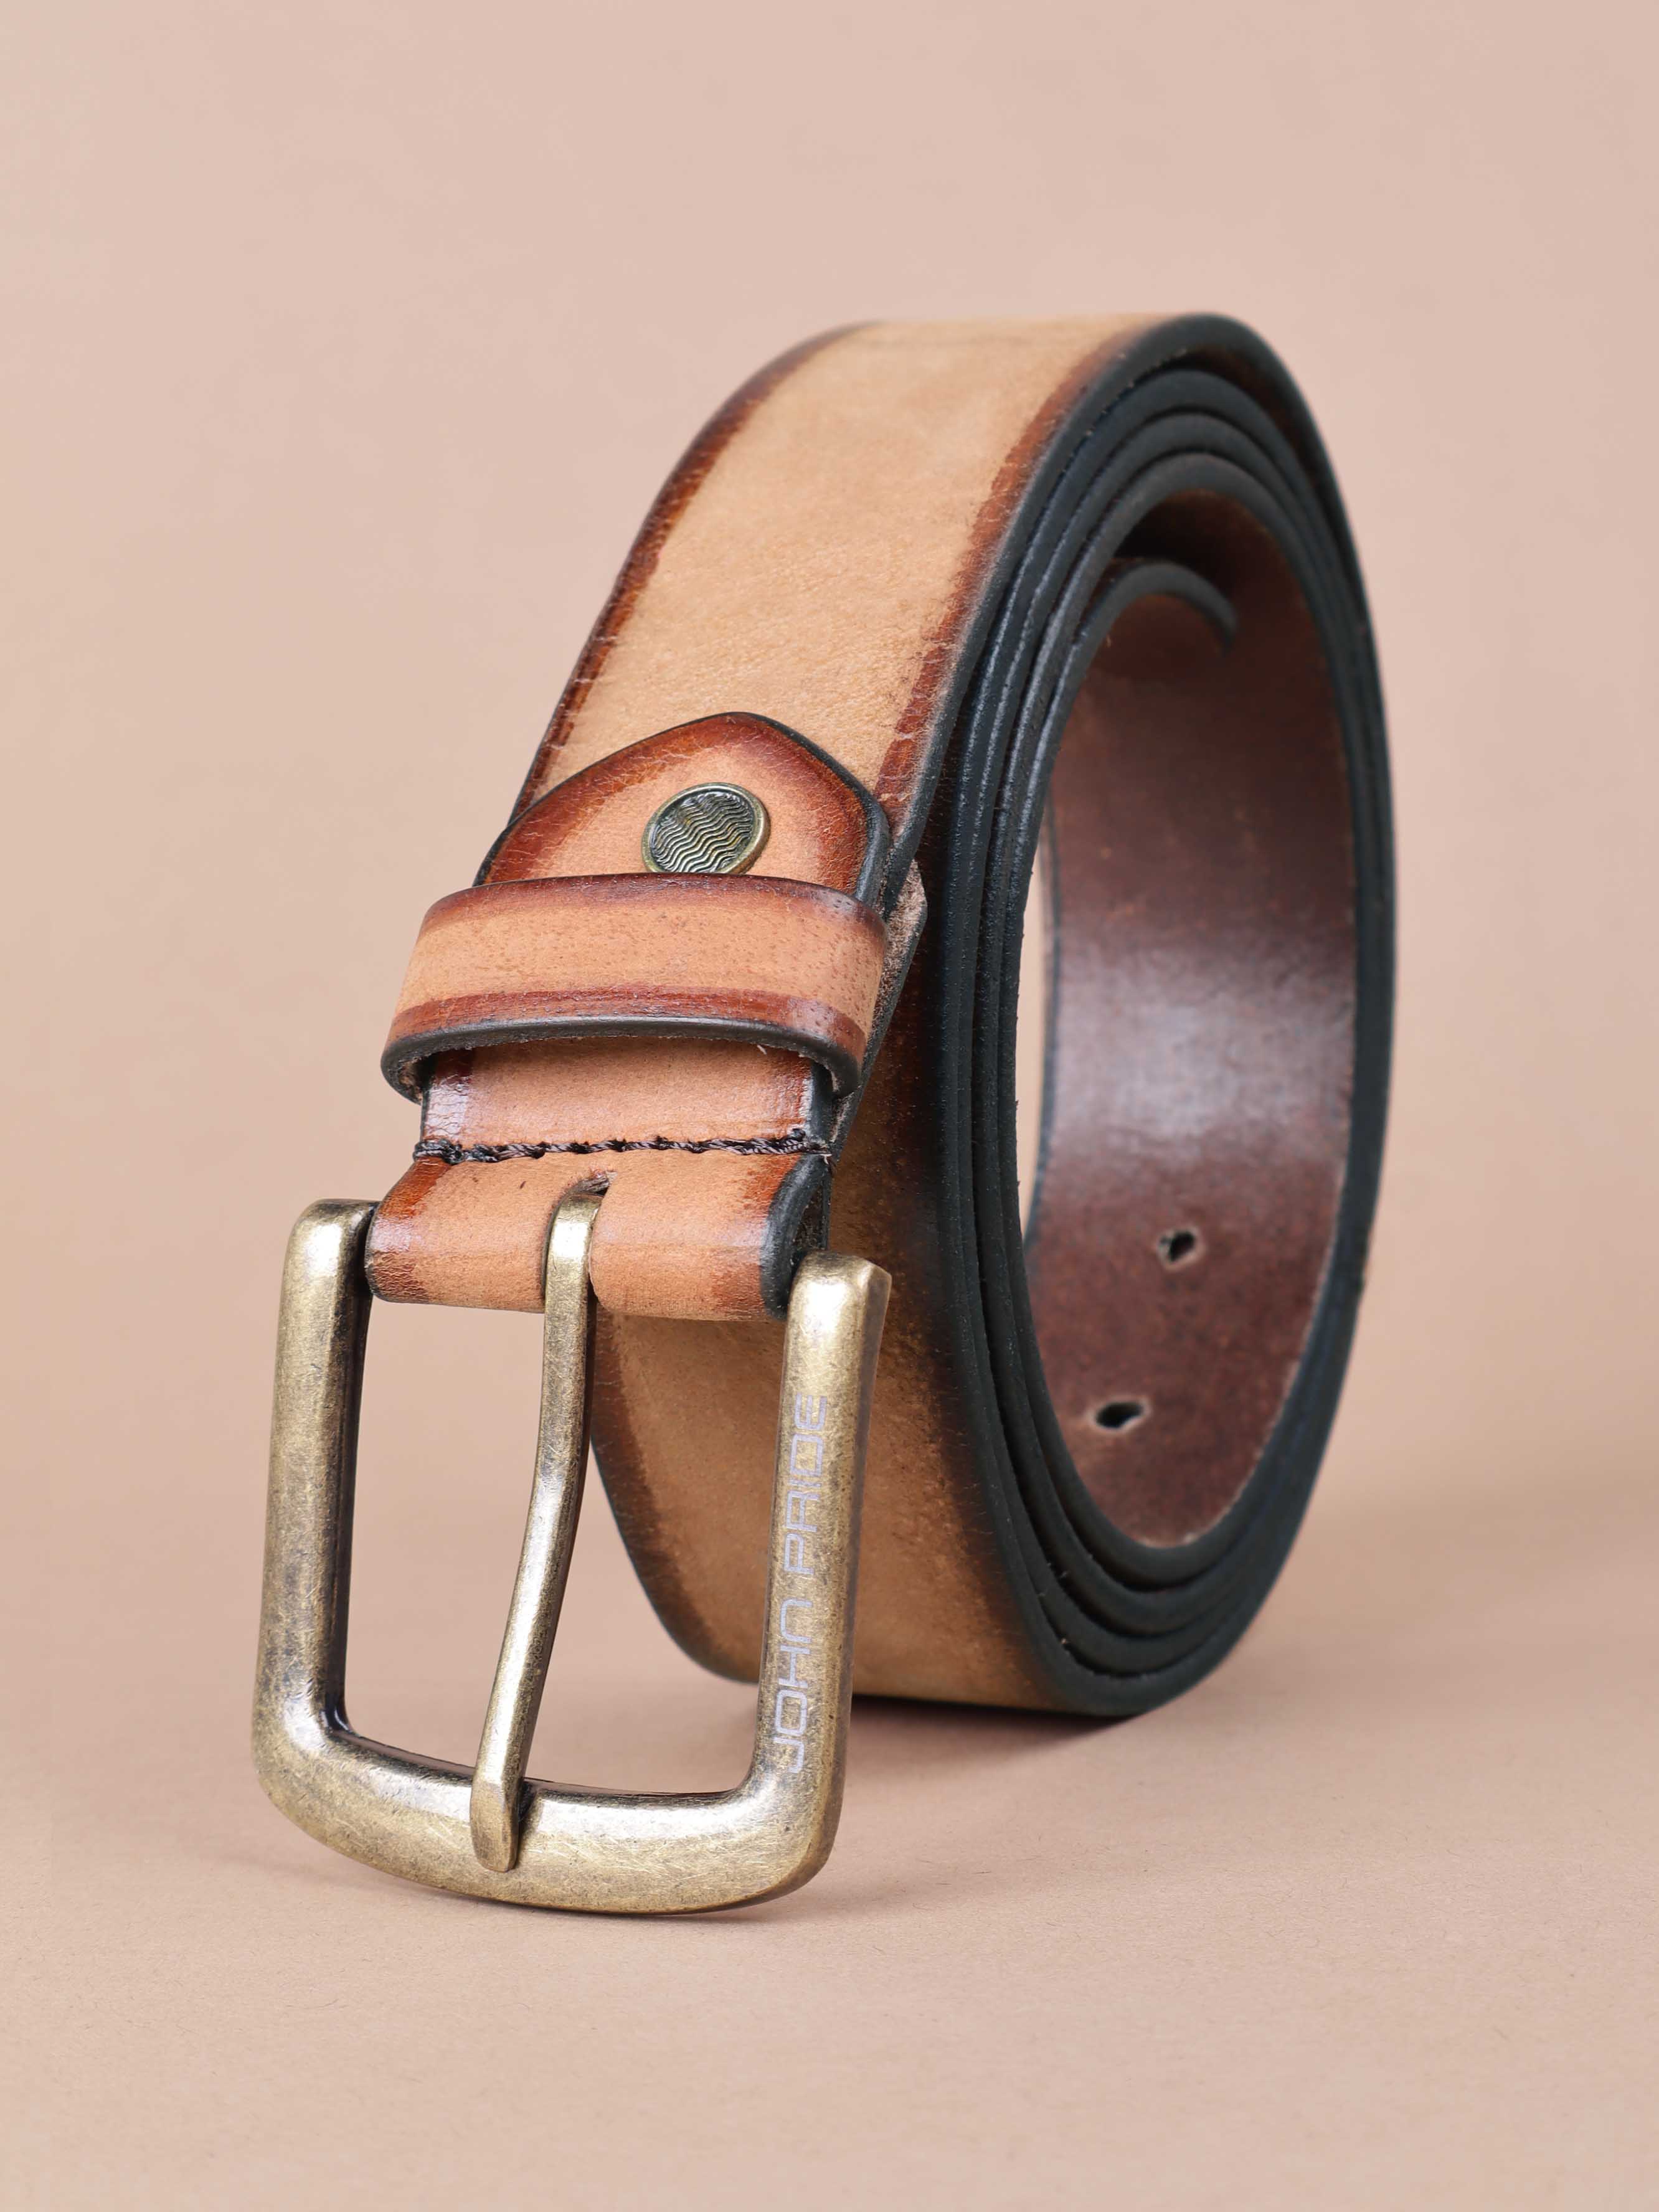 accessories/belts/JPBT1006/jpbt1006-1.jpg